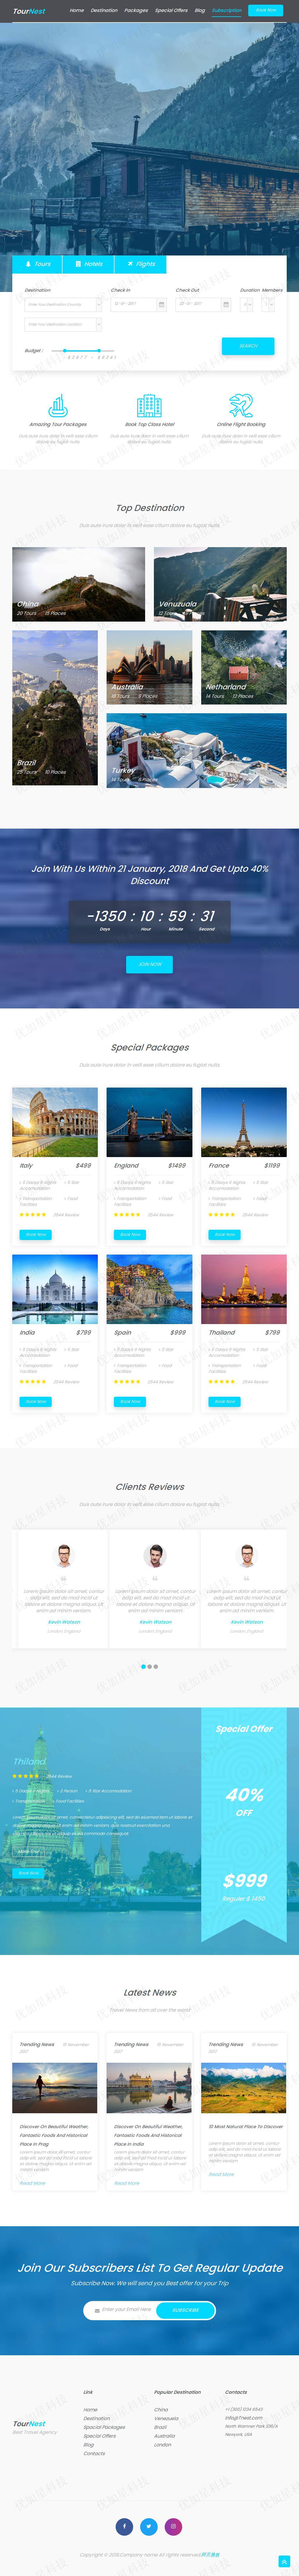 浅蓝色旅游订票网站模板下载_优加星网络科技